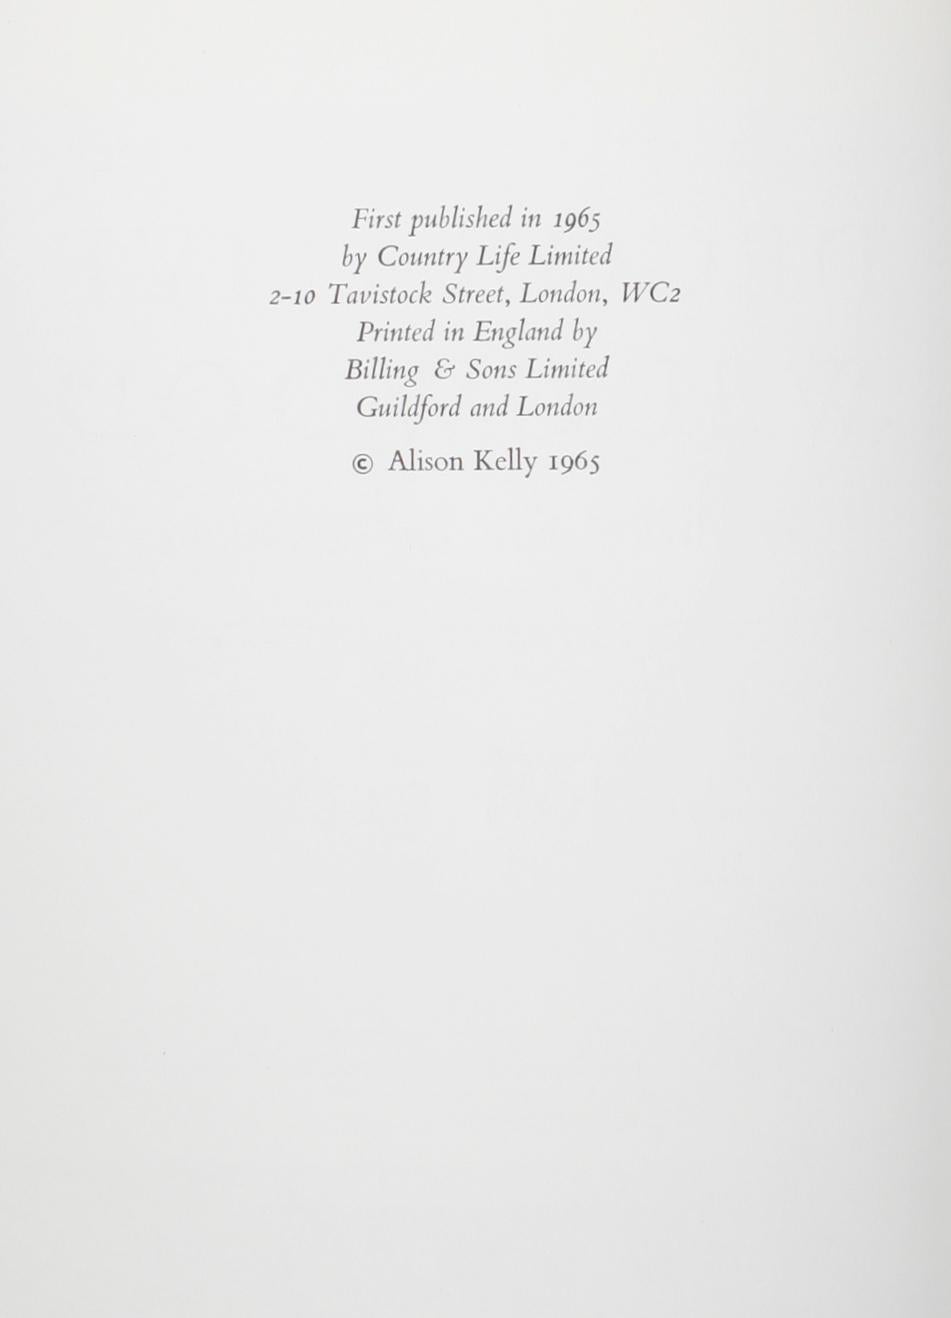 Wedgwood décoratif par Alison Kelly. Country Life Limited, 1965. 1ère édition cartonnée avec jaquette. Le livre couvre : Josiah Wedgwood et le goût de son époque, les idées de décoration intérieure, les modèles de cheminées, les cheminées de Jasper,